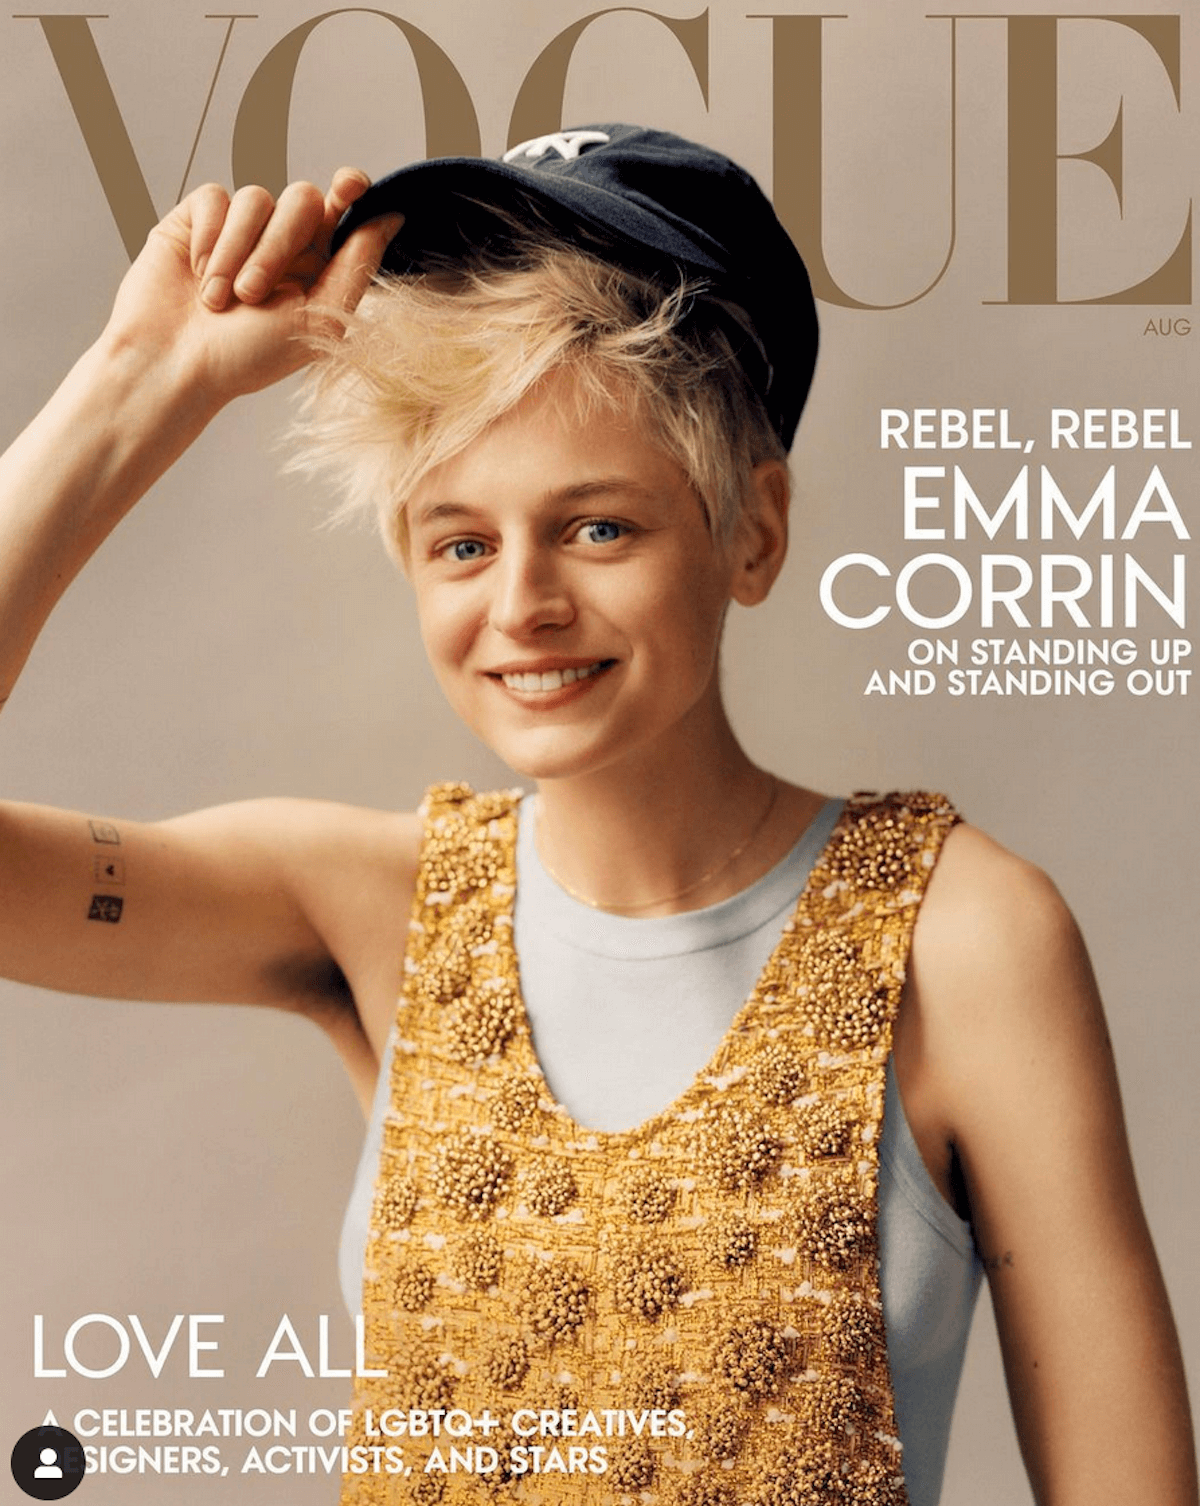 Emma Corrin è la prima persona non binaria in copertina su Vogue America - Emma Corrin su Vogue - Gay.it